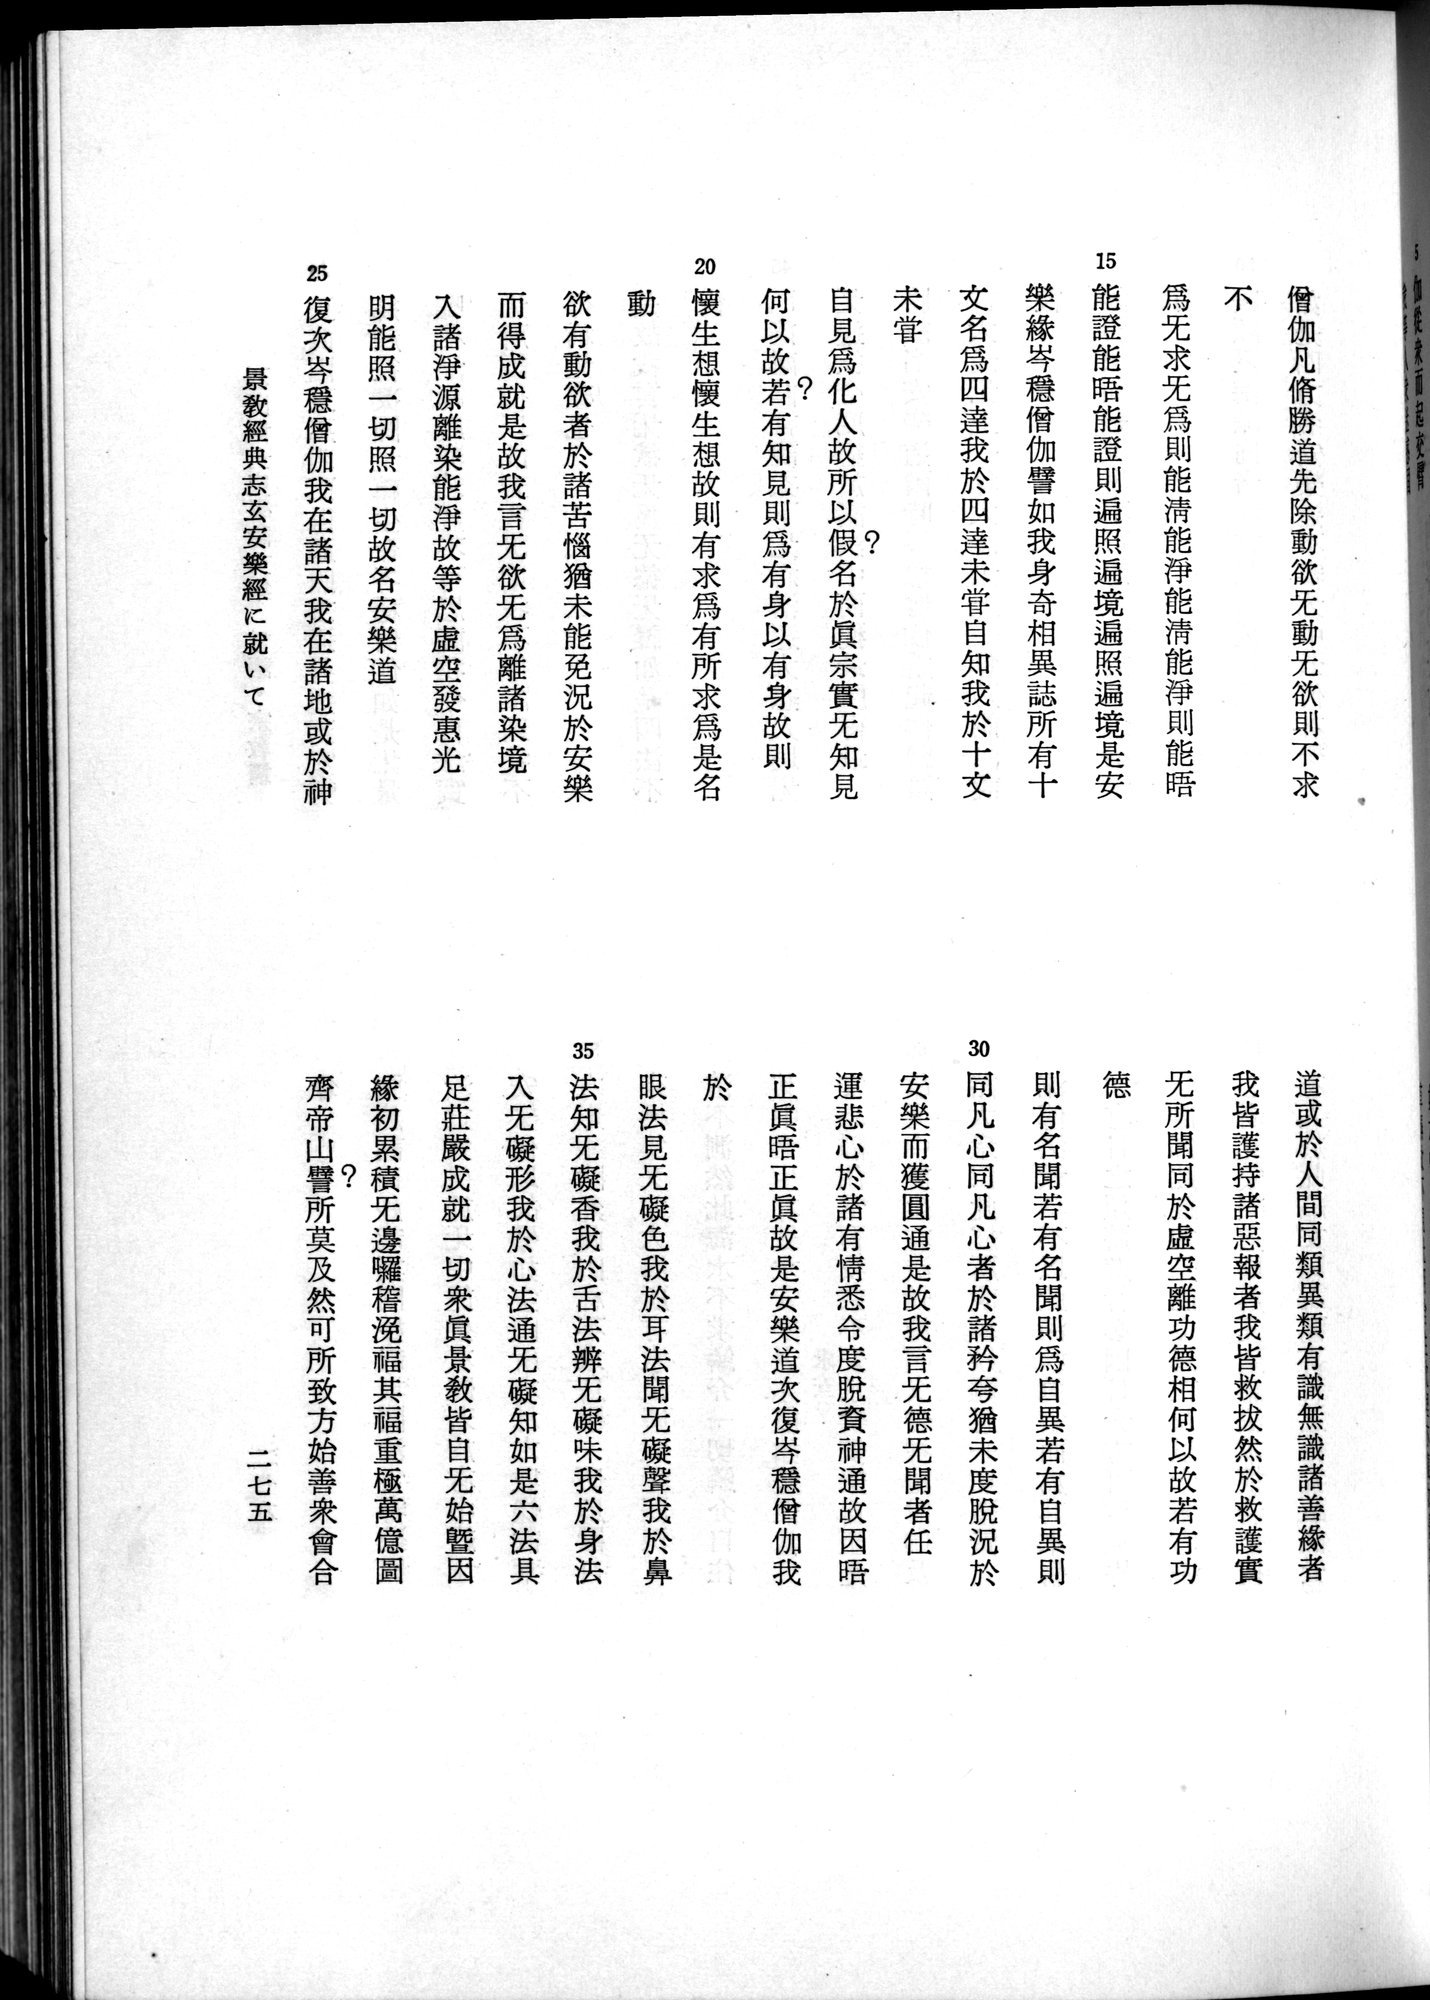 羽田博士史学論文集 : vol.2 / 337 ページ（白黒高解像度画像）